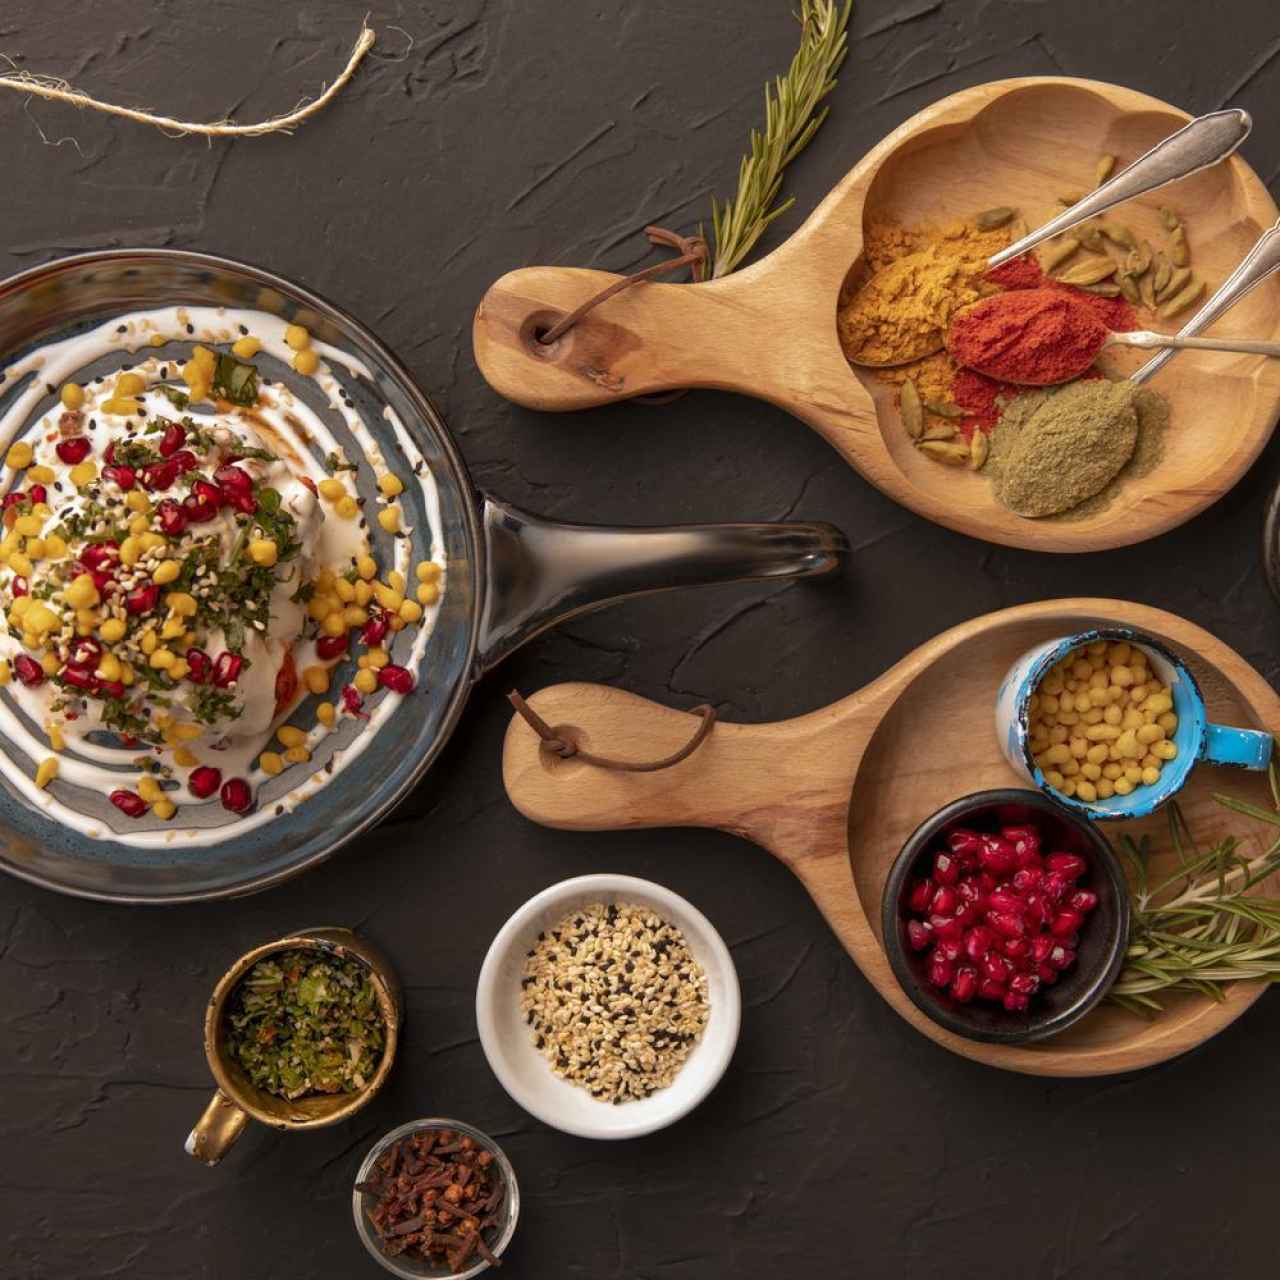 Indya by Vineet - Spices & Dish, uno de los Bib Gourmand